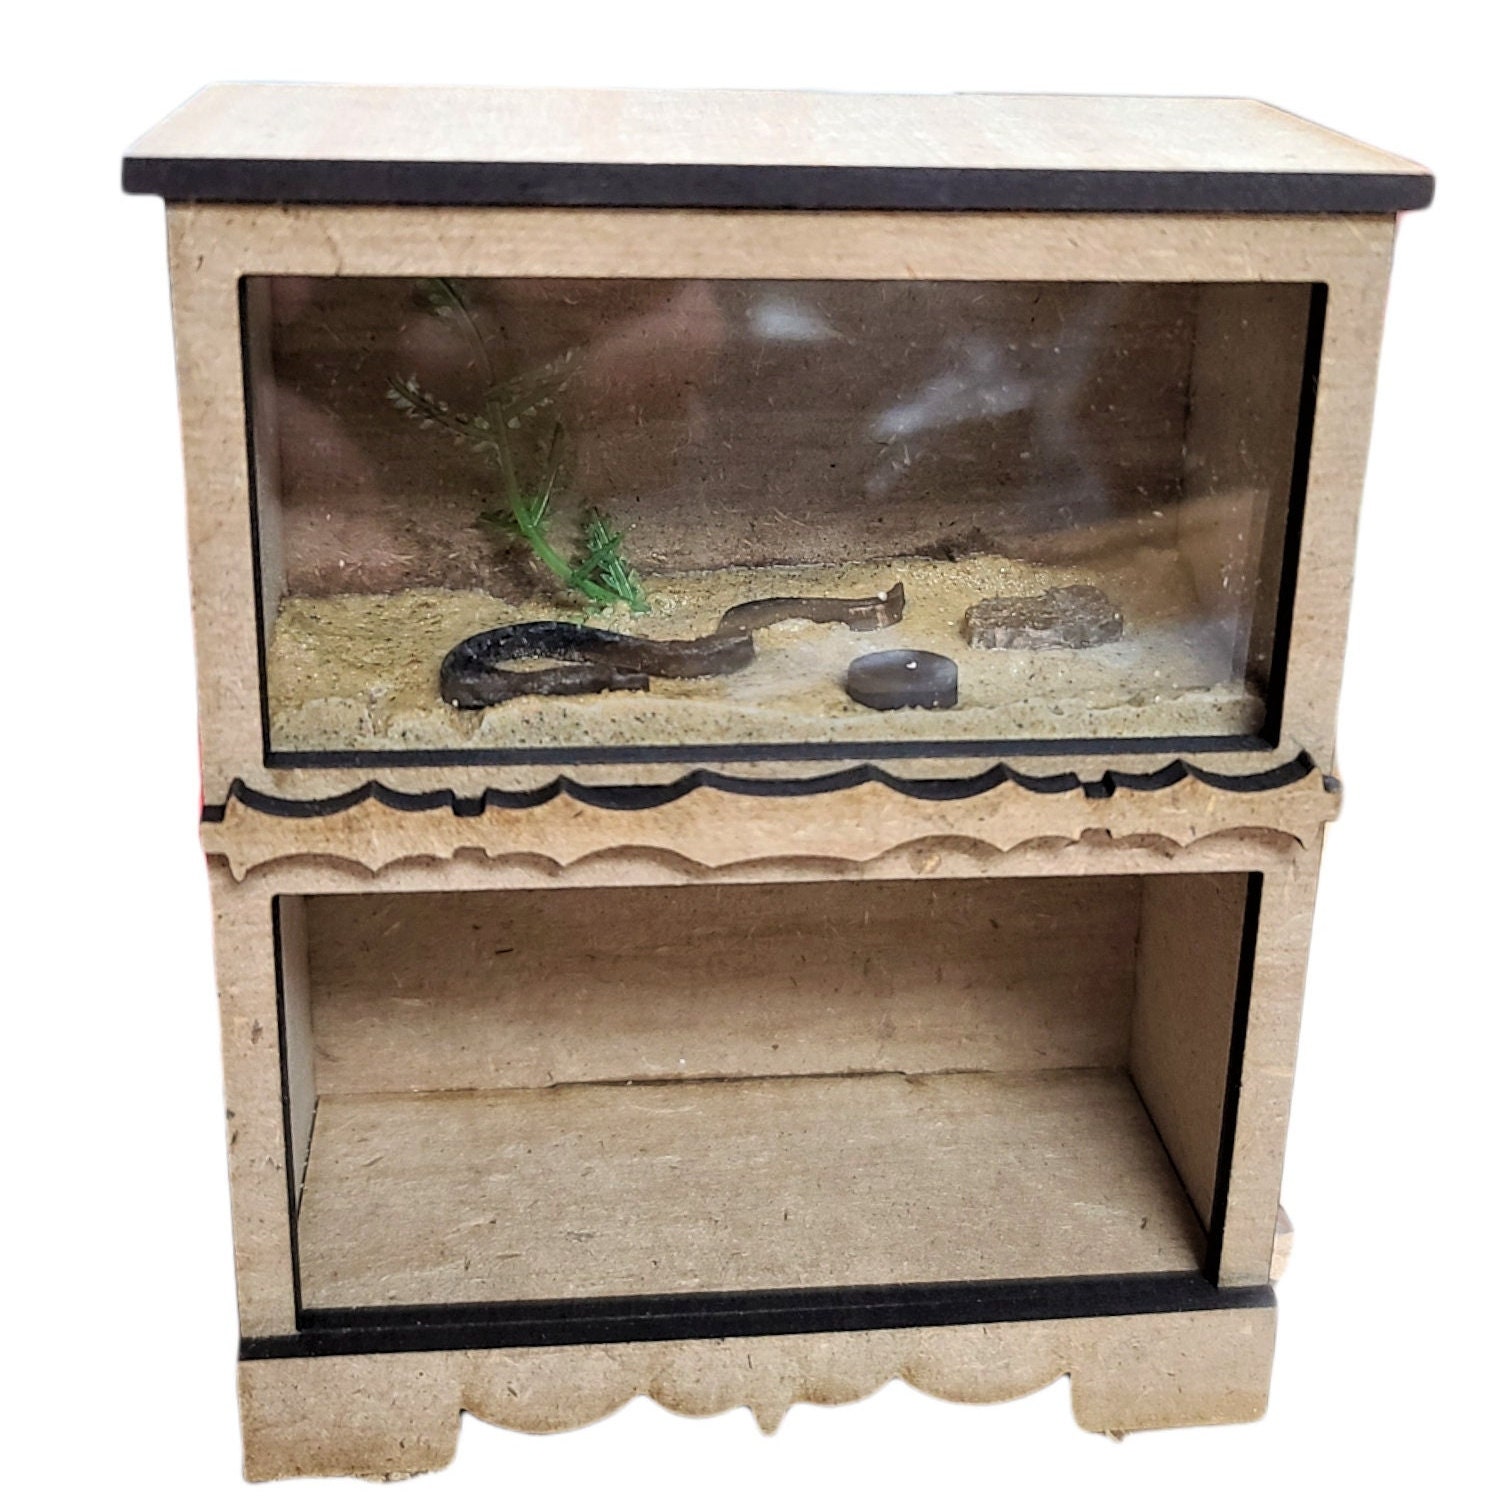 Fish Tank Stand Metal Aquarium Stand with Cabinet, for 40 Gallon Aquarium 